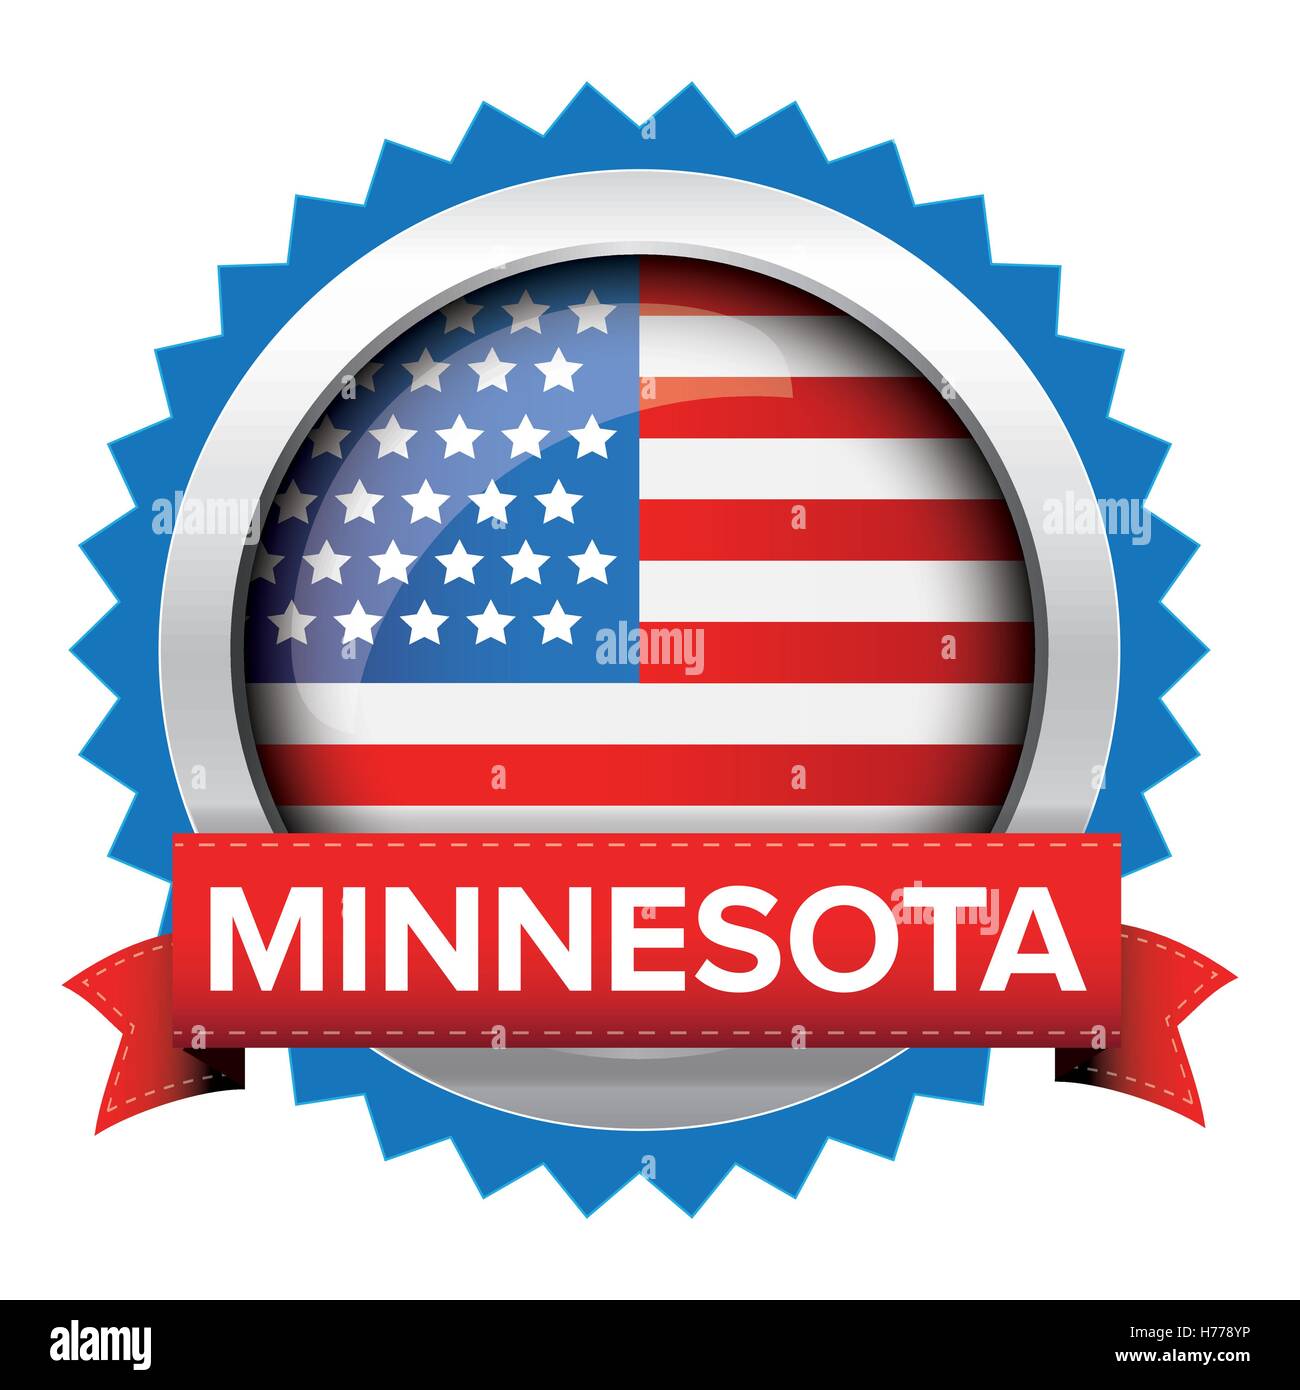 Minnesota and USA flag badge vector Stock Vector